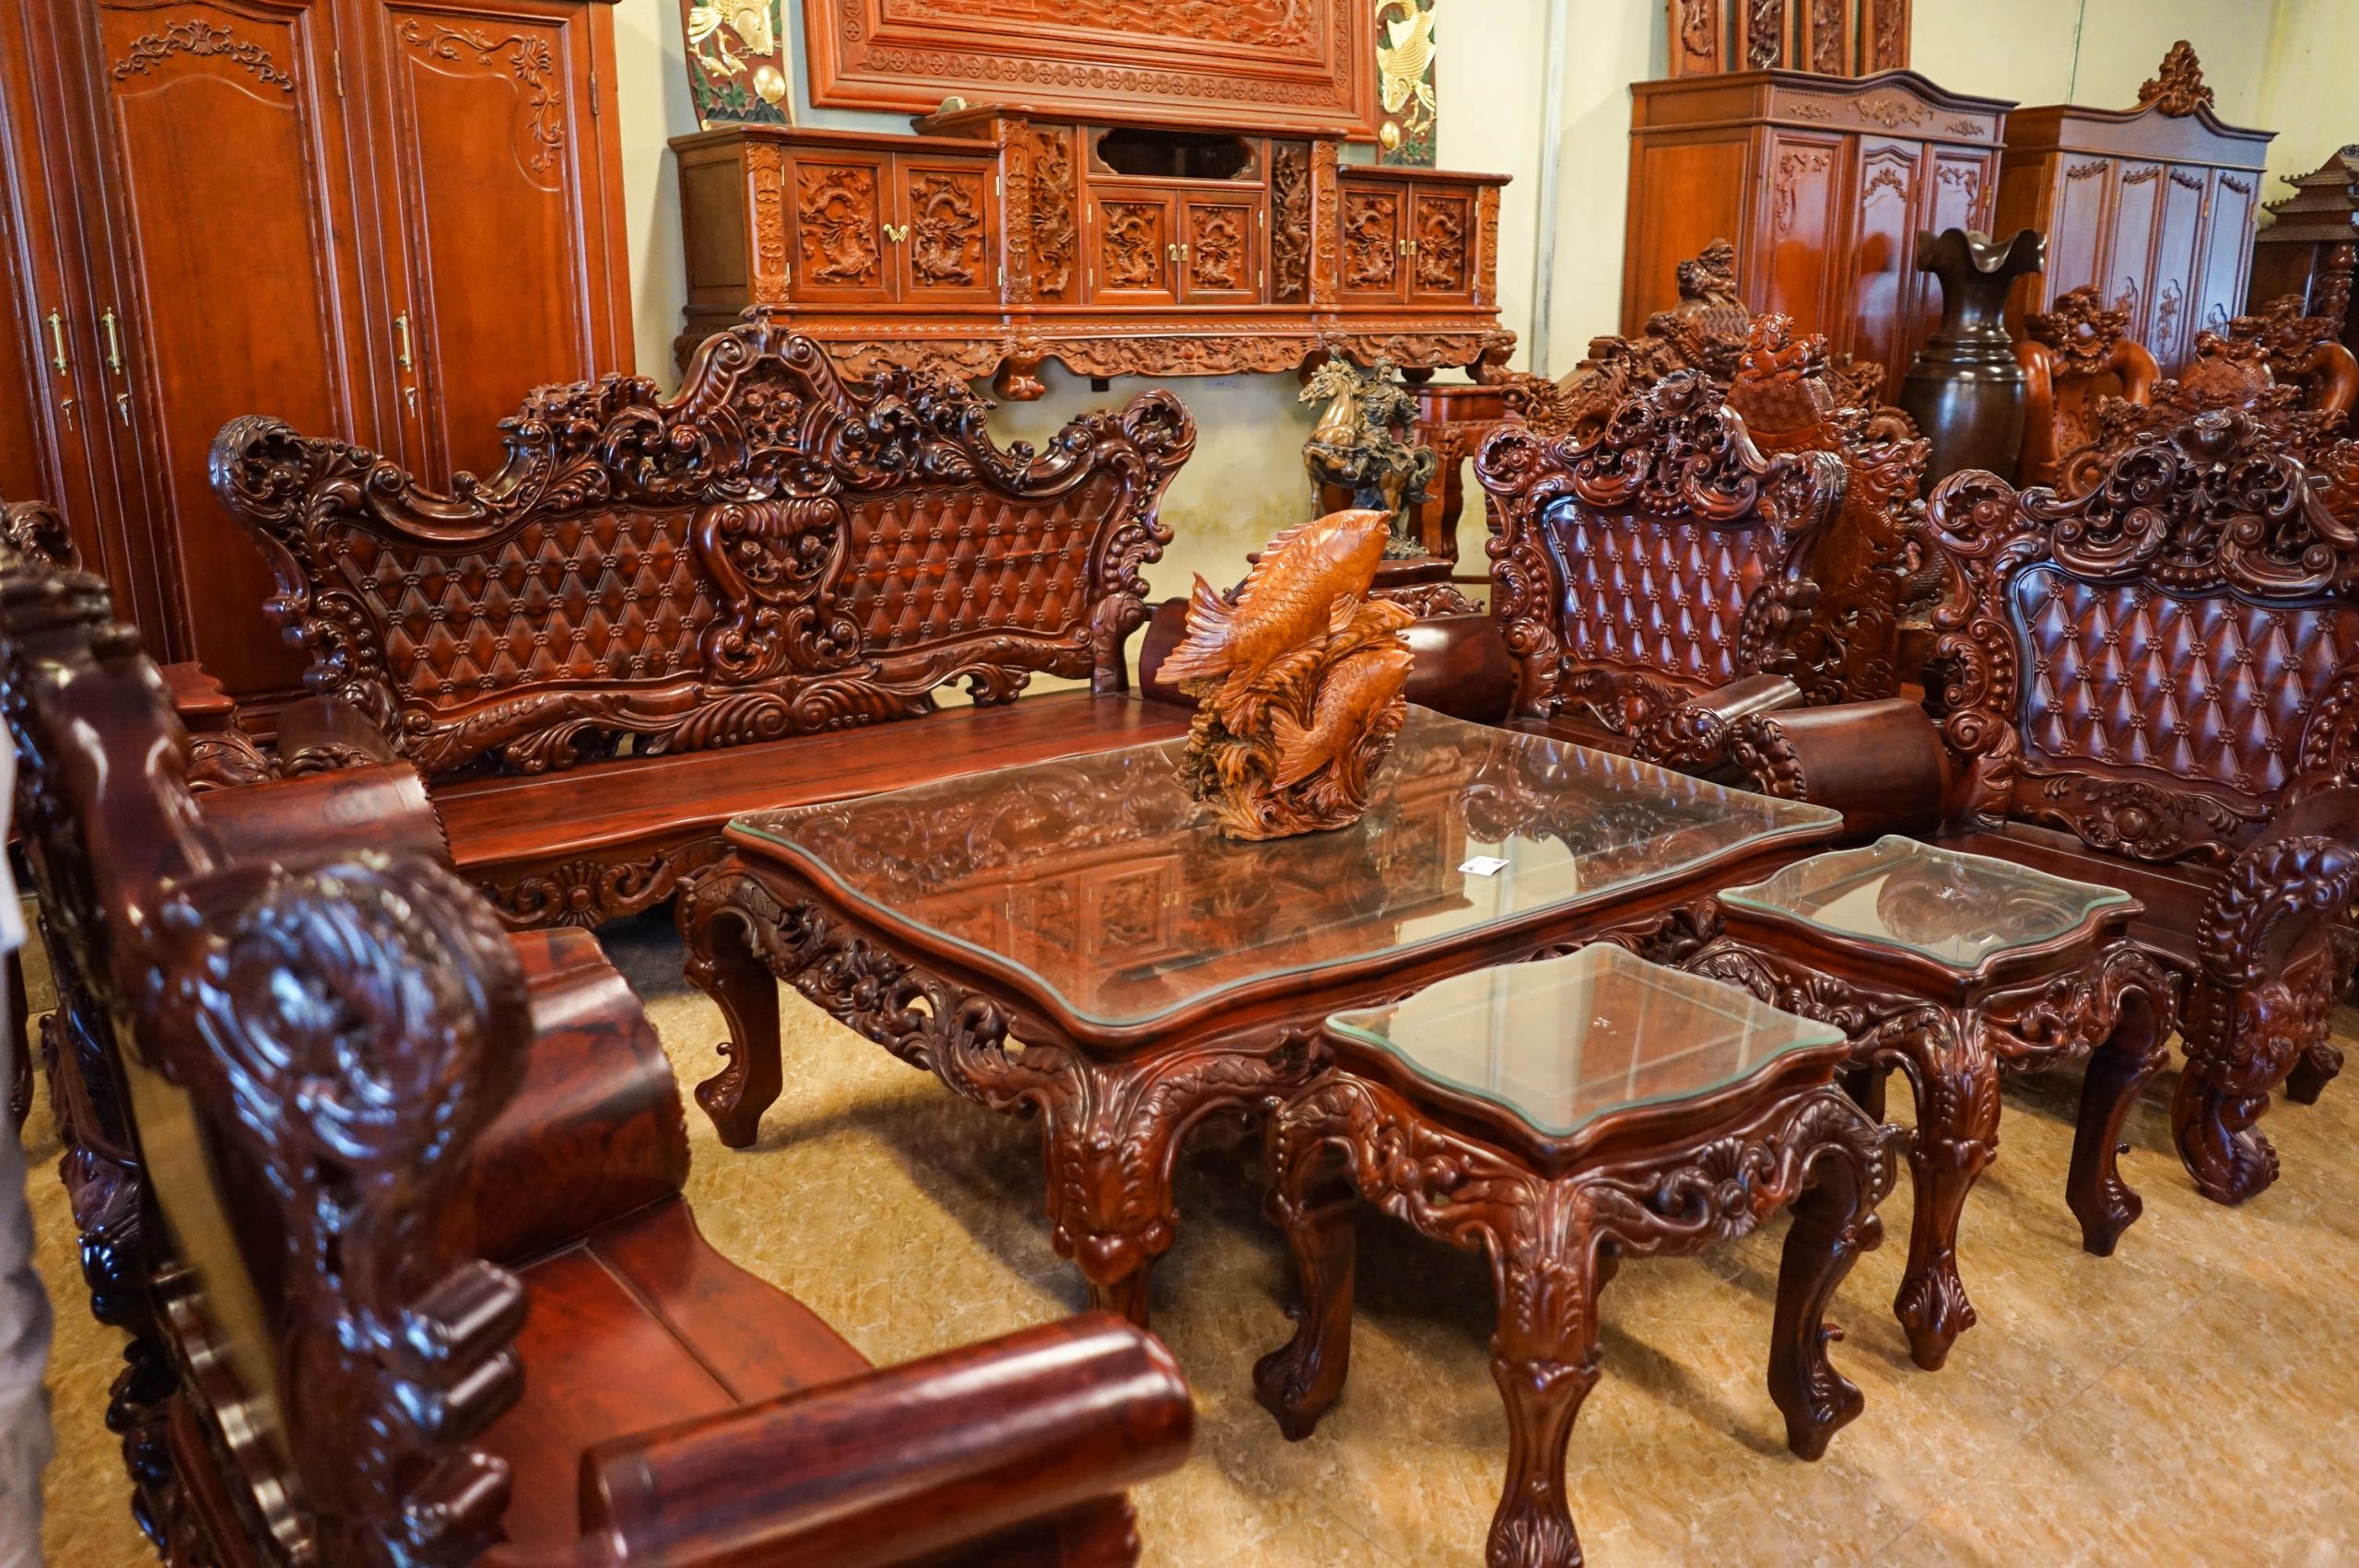 Bộ hoàng gia gỗ hương đỏ là một tác phẩm nghệ thuật được tạo ra bởi các nghệ nhân tài năng. Với chi tiết tinh xảo và nguyên liệu cao cấp, bộ sưu tập này nổi bật với vẻ đẹp cổ điển và đẳng cấp của vương quốc phương Đông.